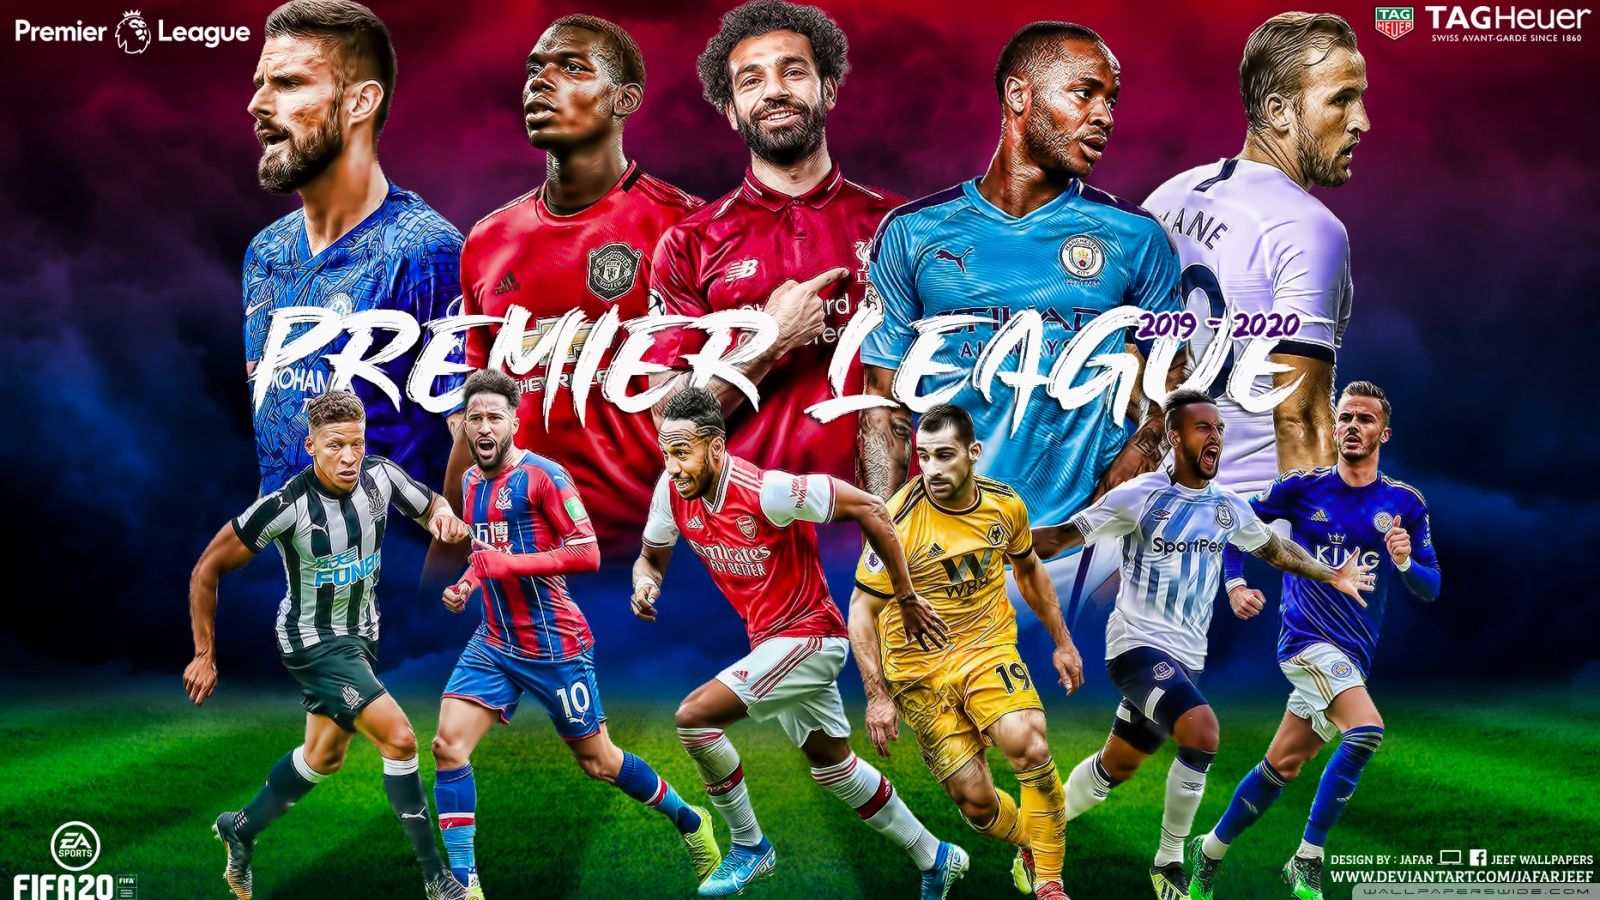 Premier League Wallpapers 4k HD Premier League Backgrounds On WallpaperBat